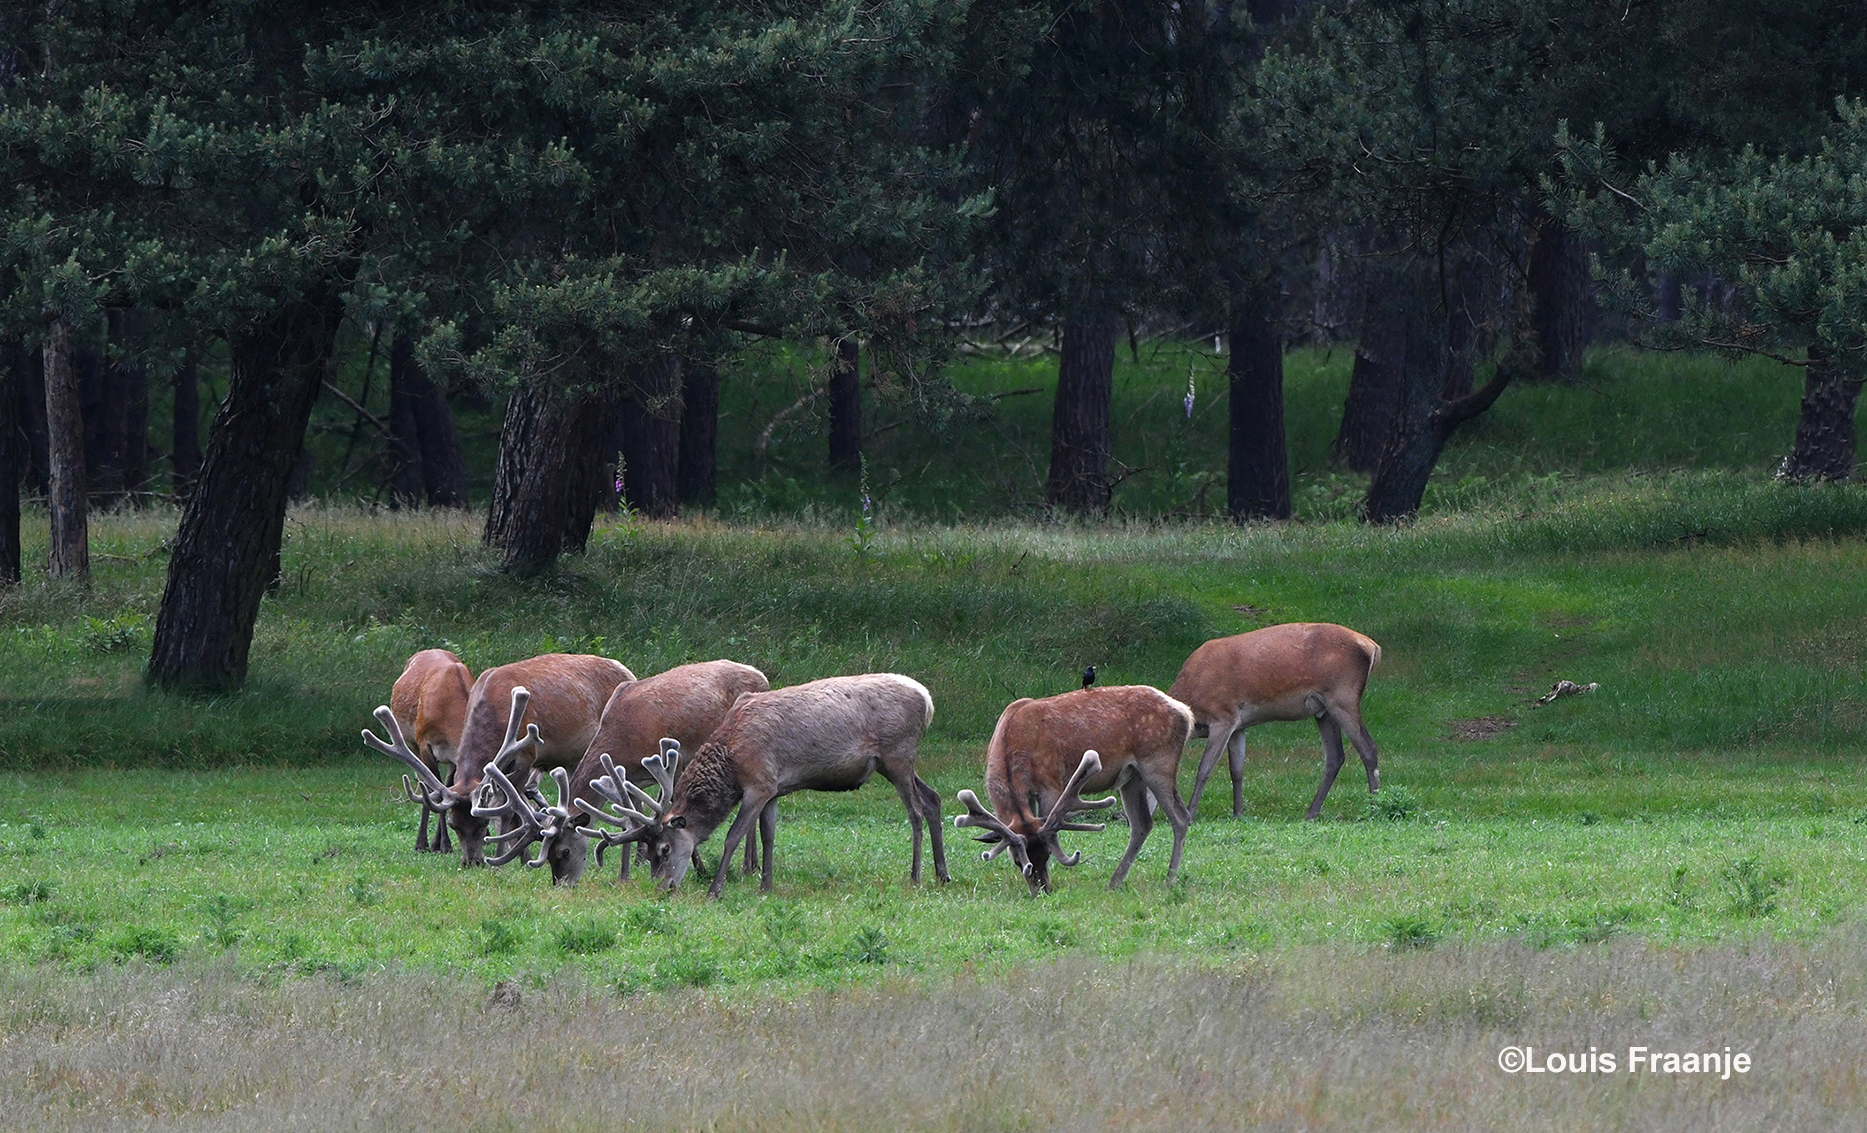 Als je goed kijkt zie je op de rug van het rechtse hert een spreeuw zitten - Foto: ©Louis Fraanje